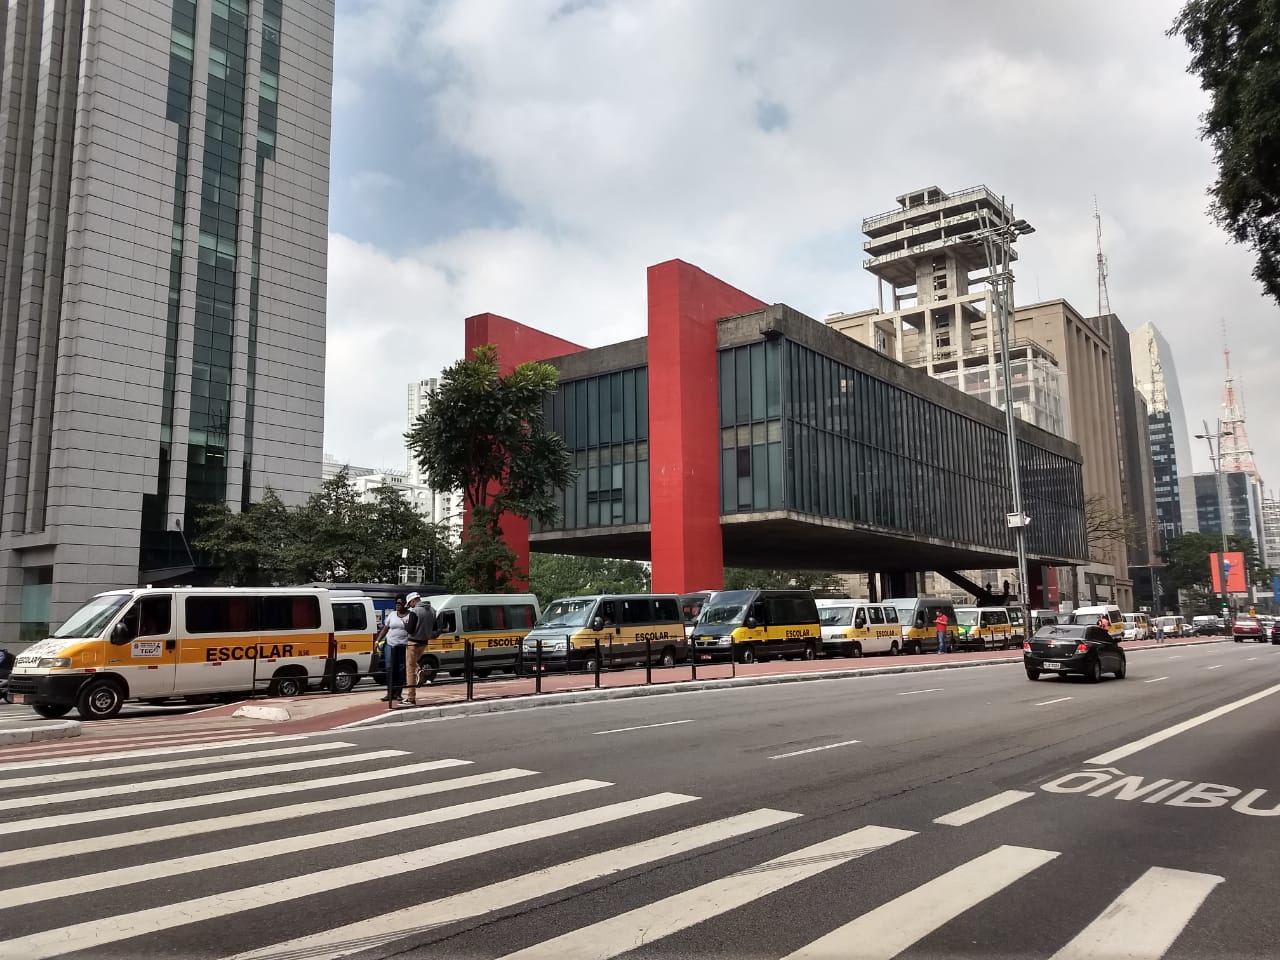 Trecho da avenida Paulista em que o MASP aparece